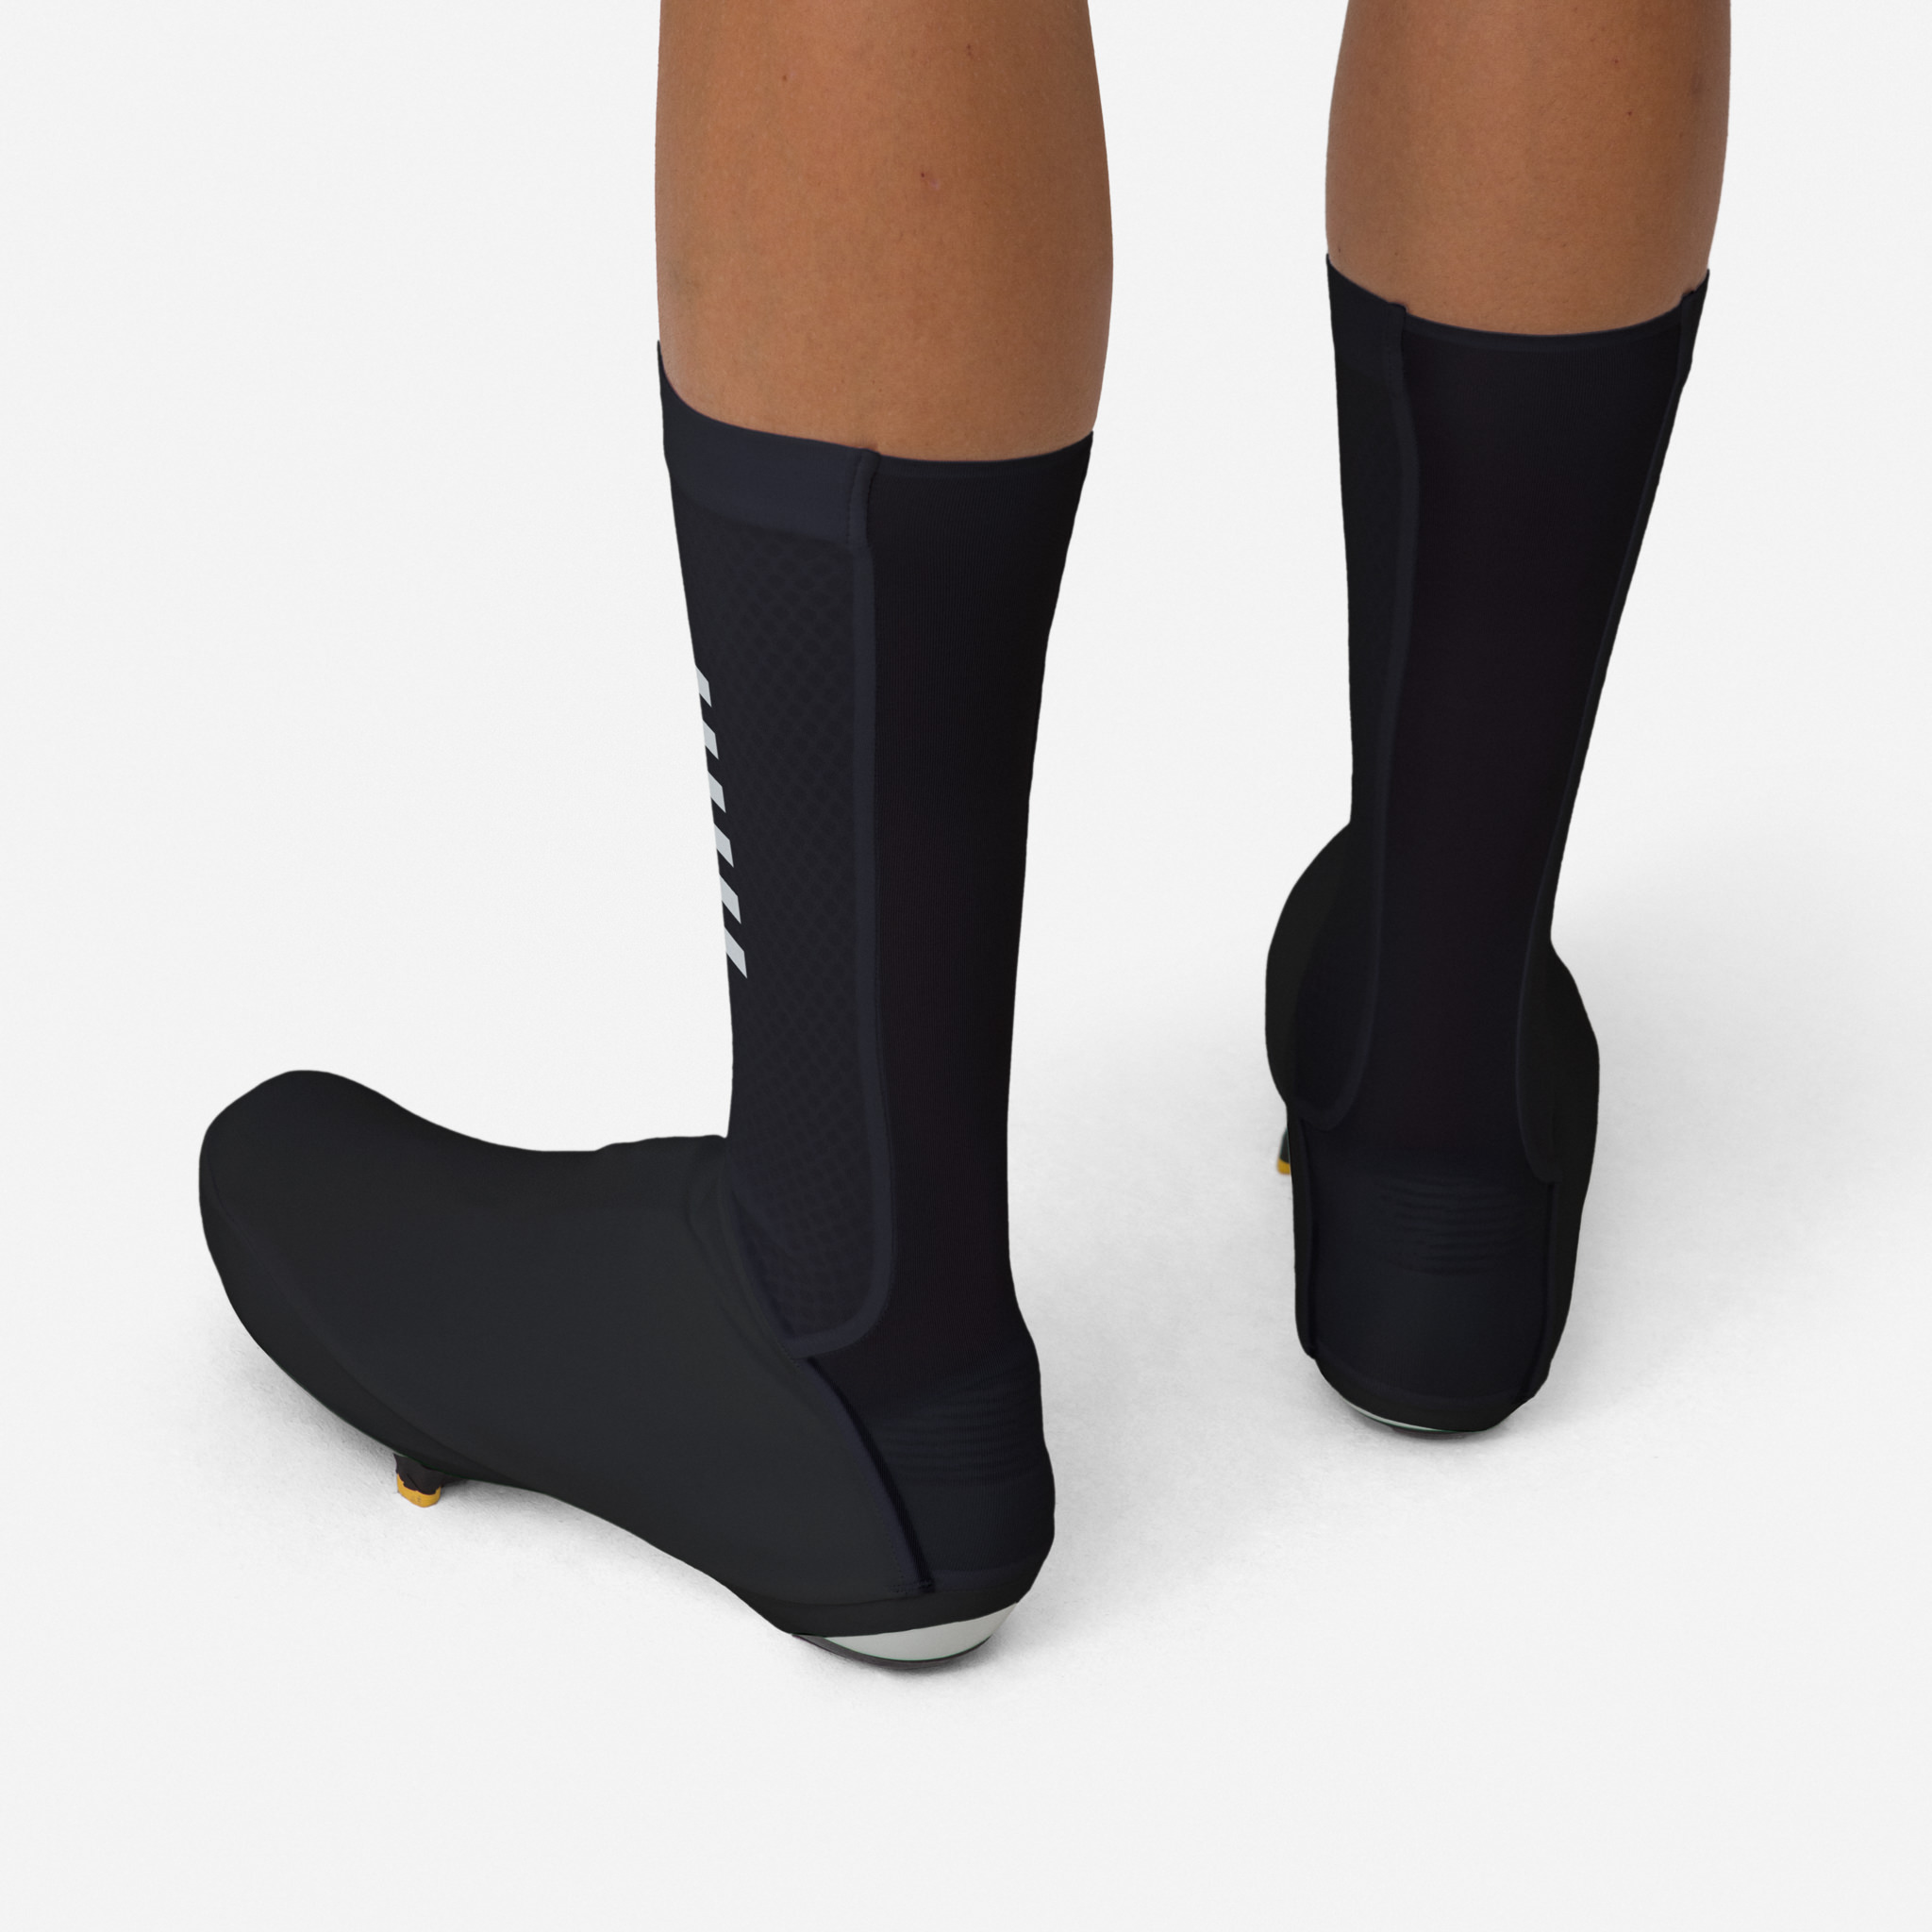 Aero Overshoes White – The Wonderful Socks